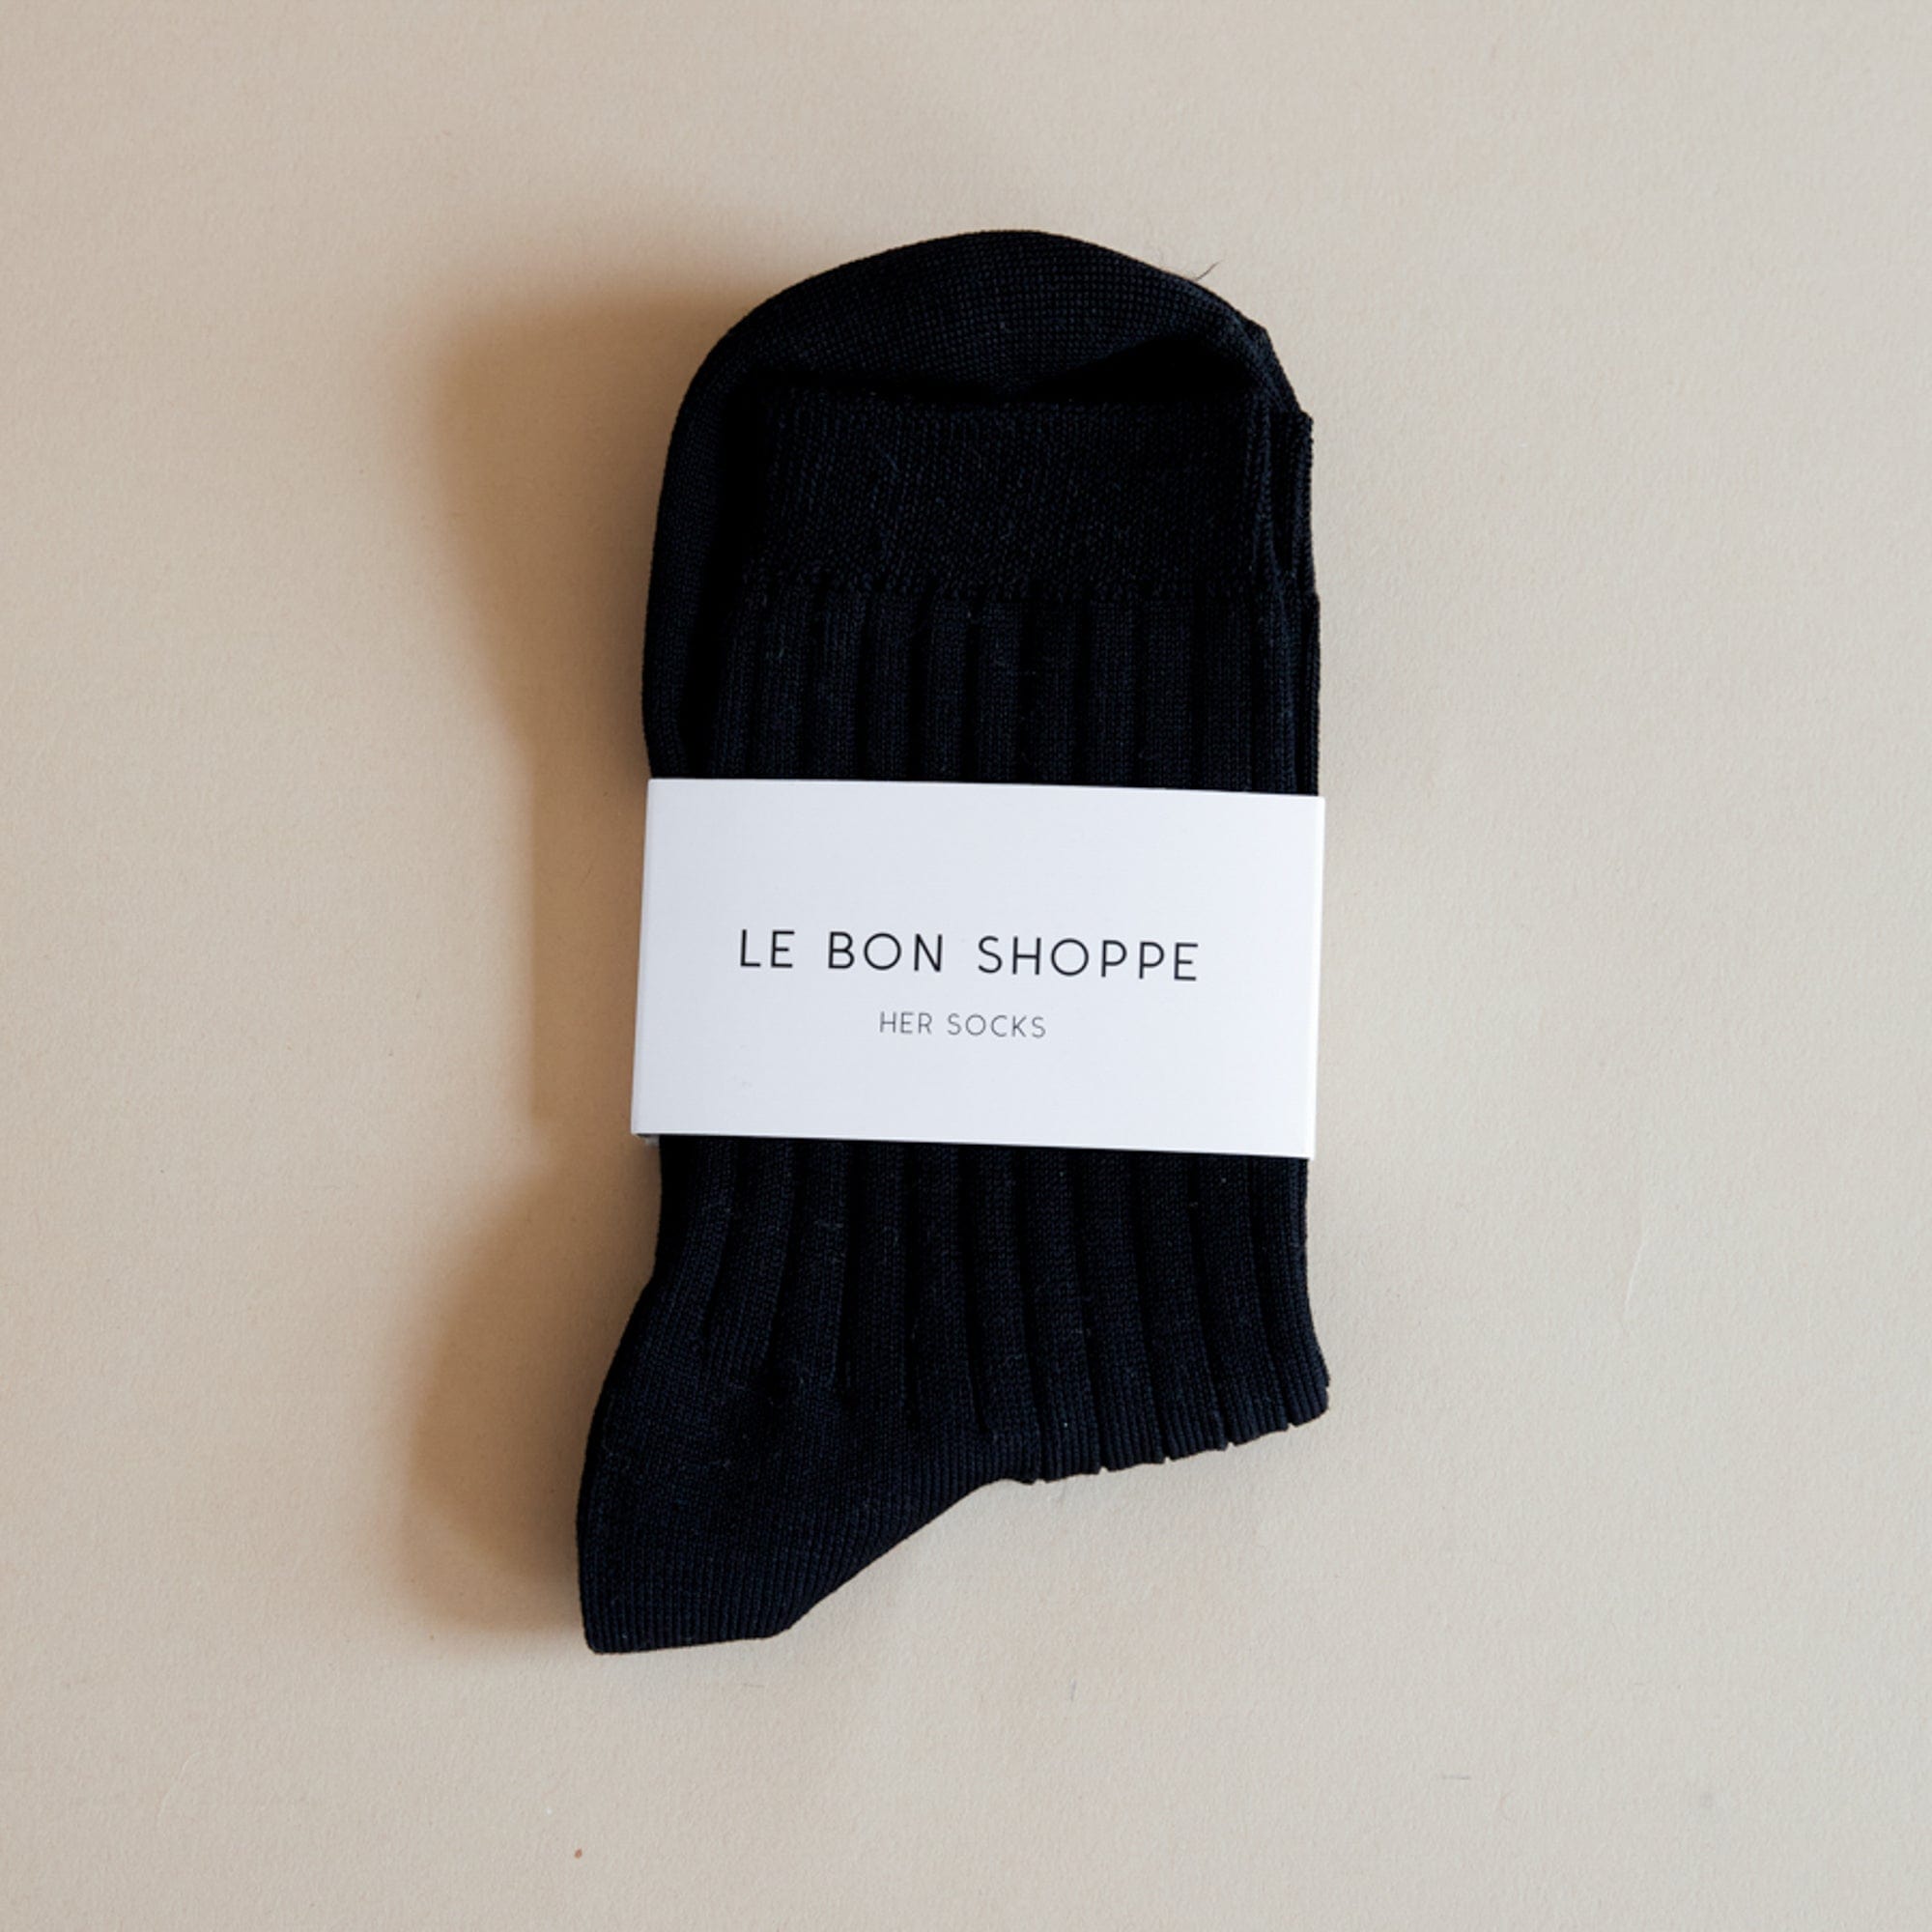 Le Bon Shoppe Socks True Black Le Bon "Her" Socks